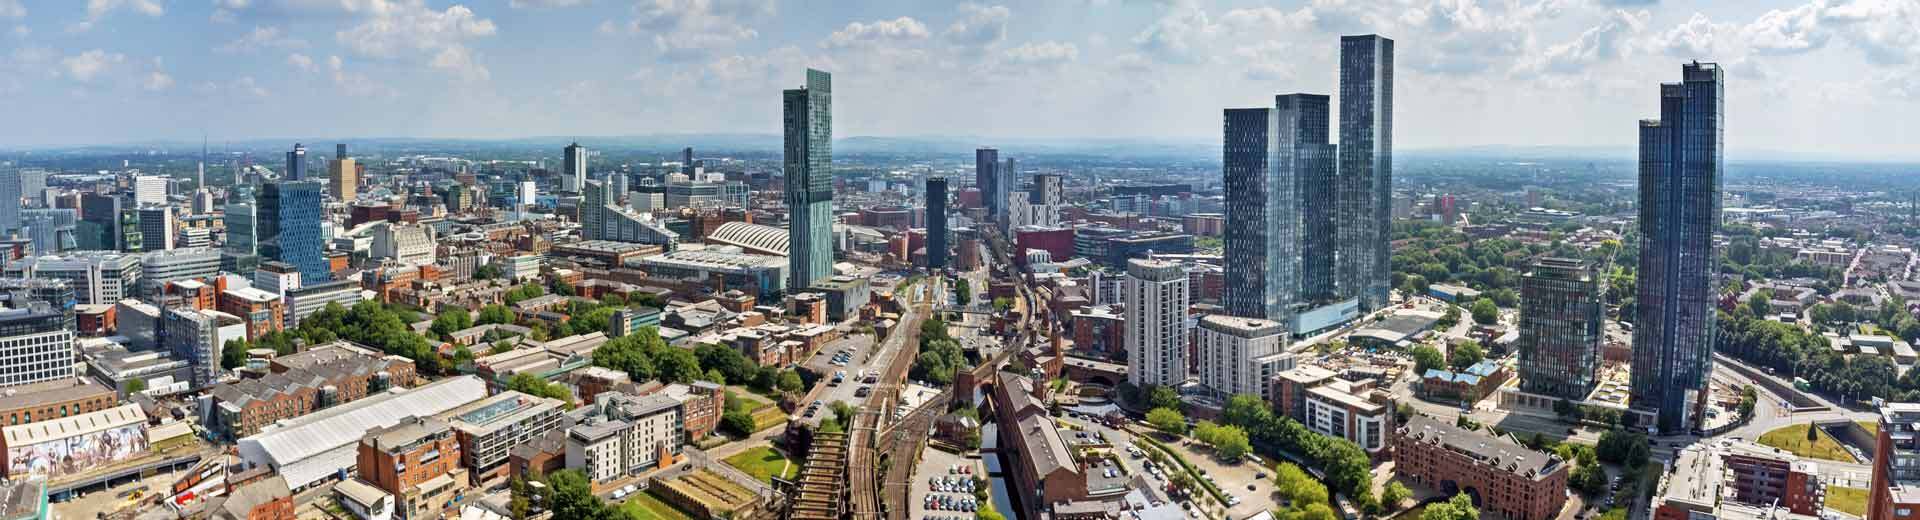 Vue aérienne de Manchester, avec des gratte-ciel dominant les bâtiments victoriens en briques rouges.